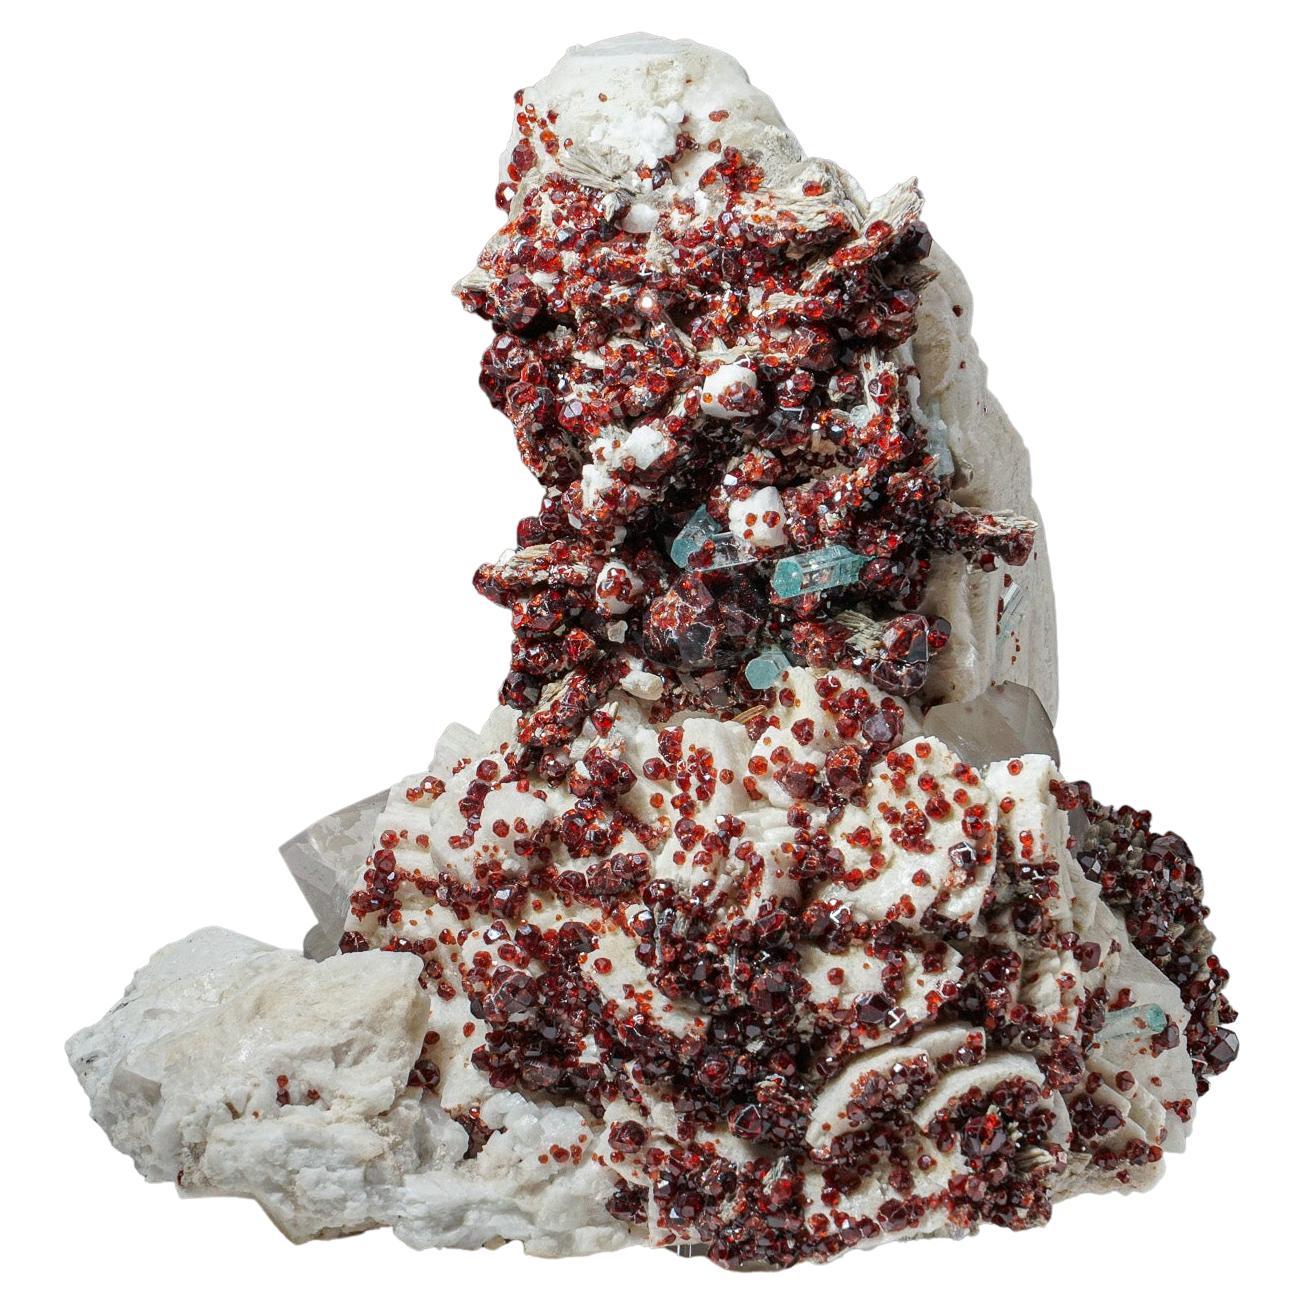 Garnet spessartine avec cristaux d'aigue-marine sur Albite du Pakistan